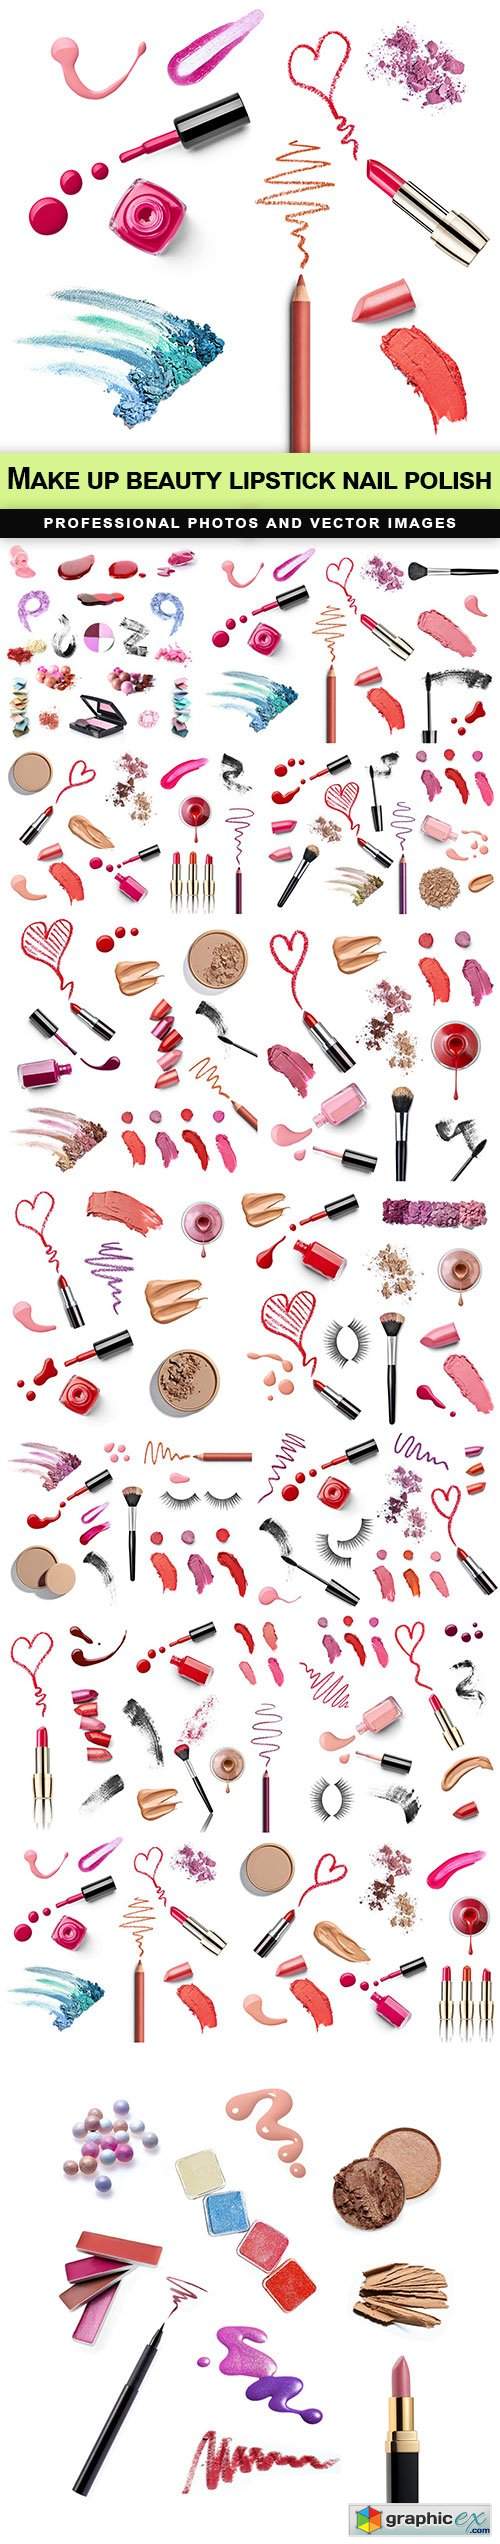  Make up beauty lipstick nail polish - 15 UHQ JPEG 